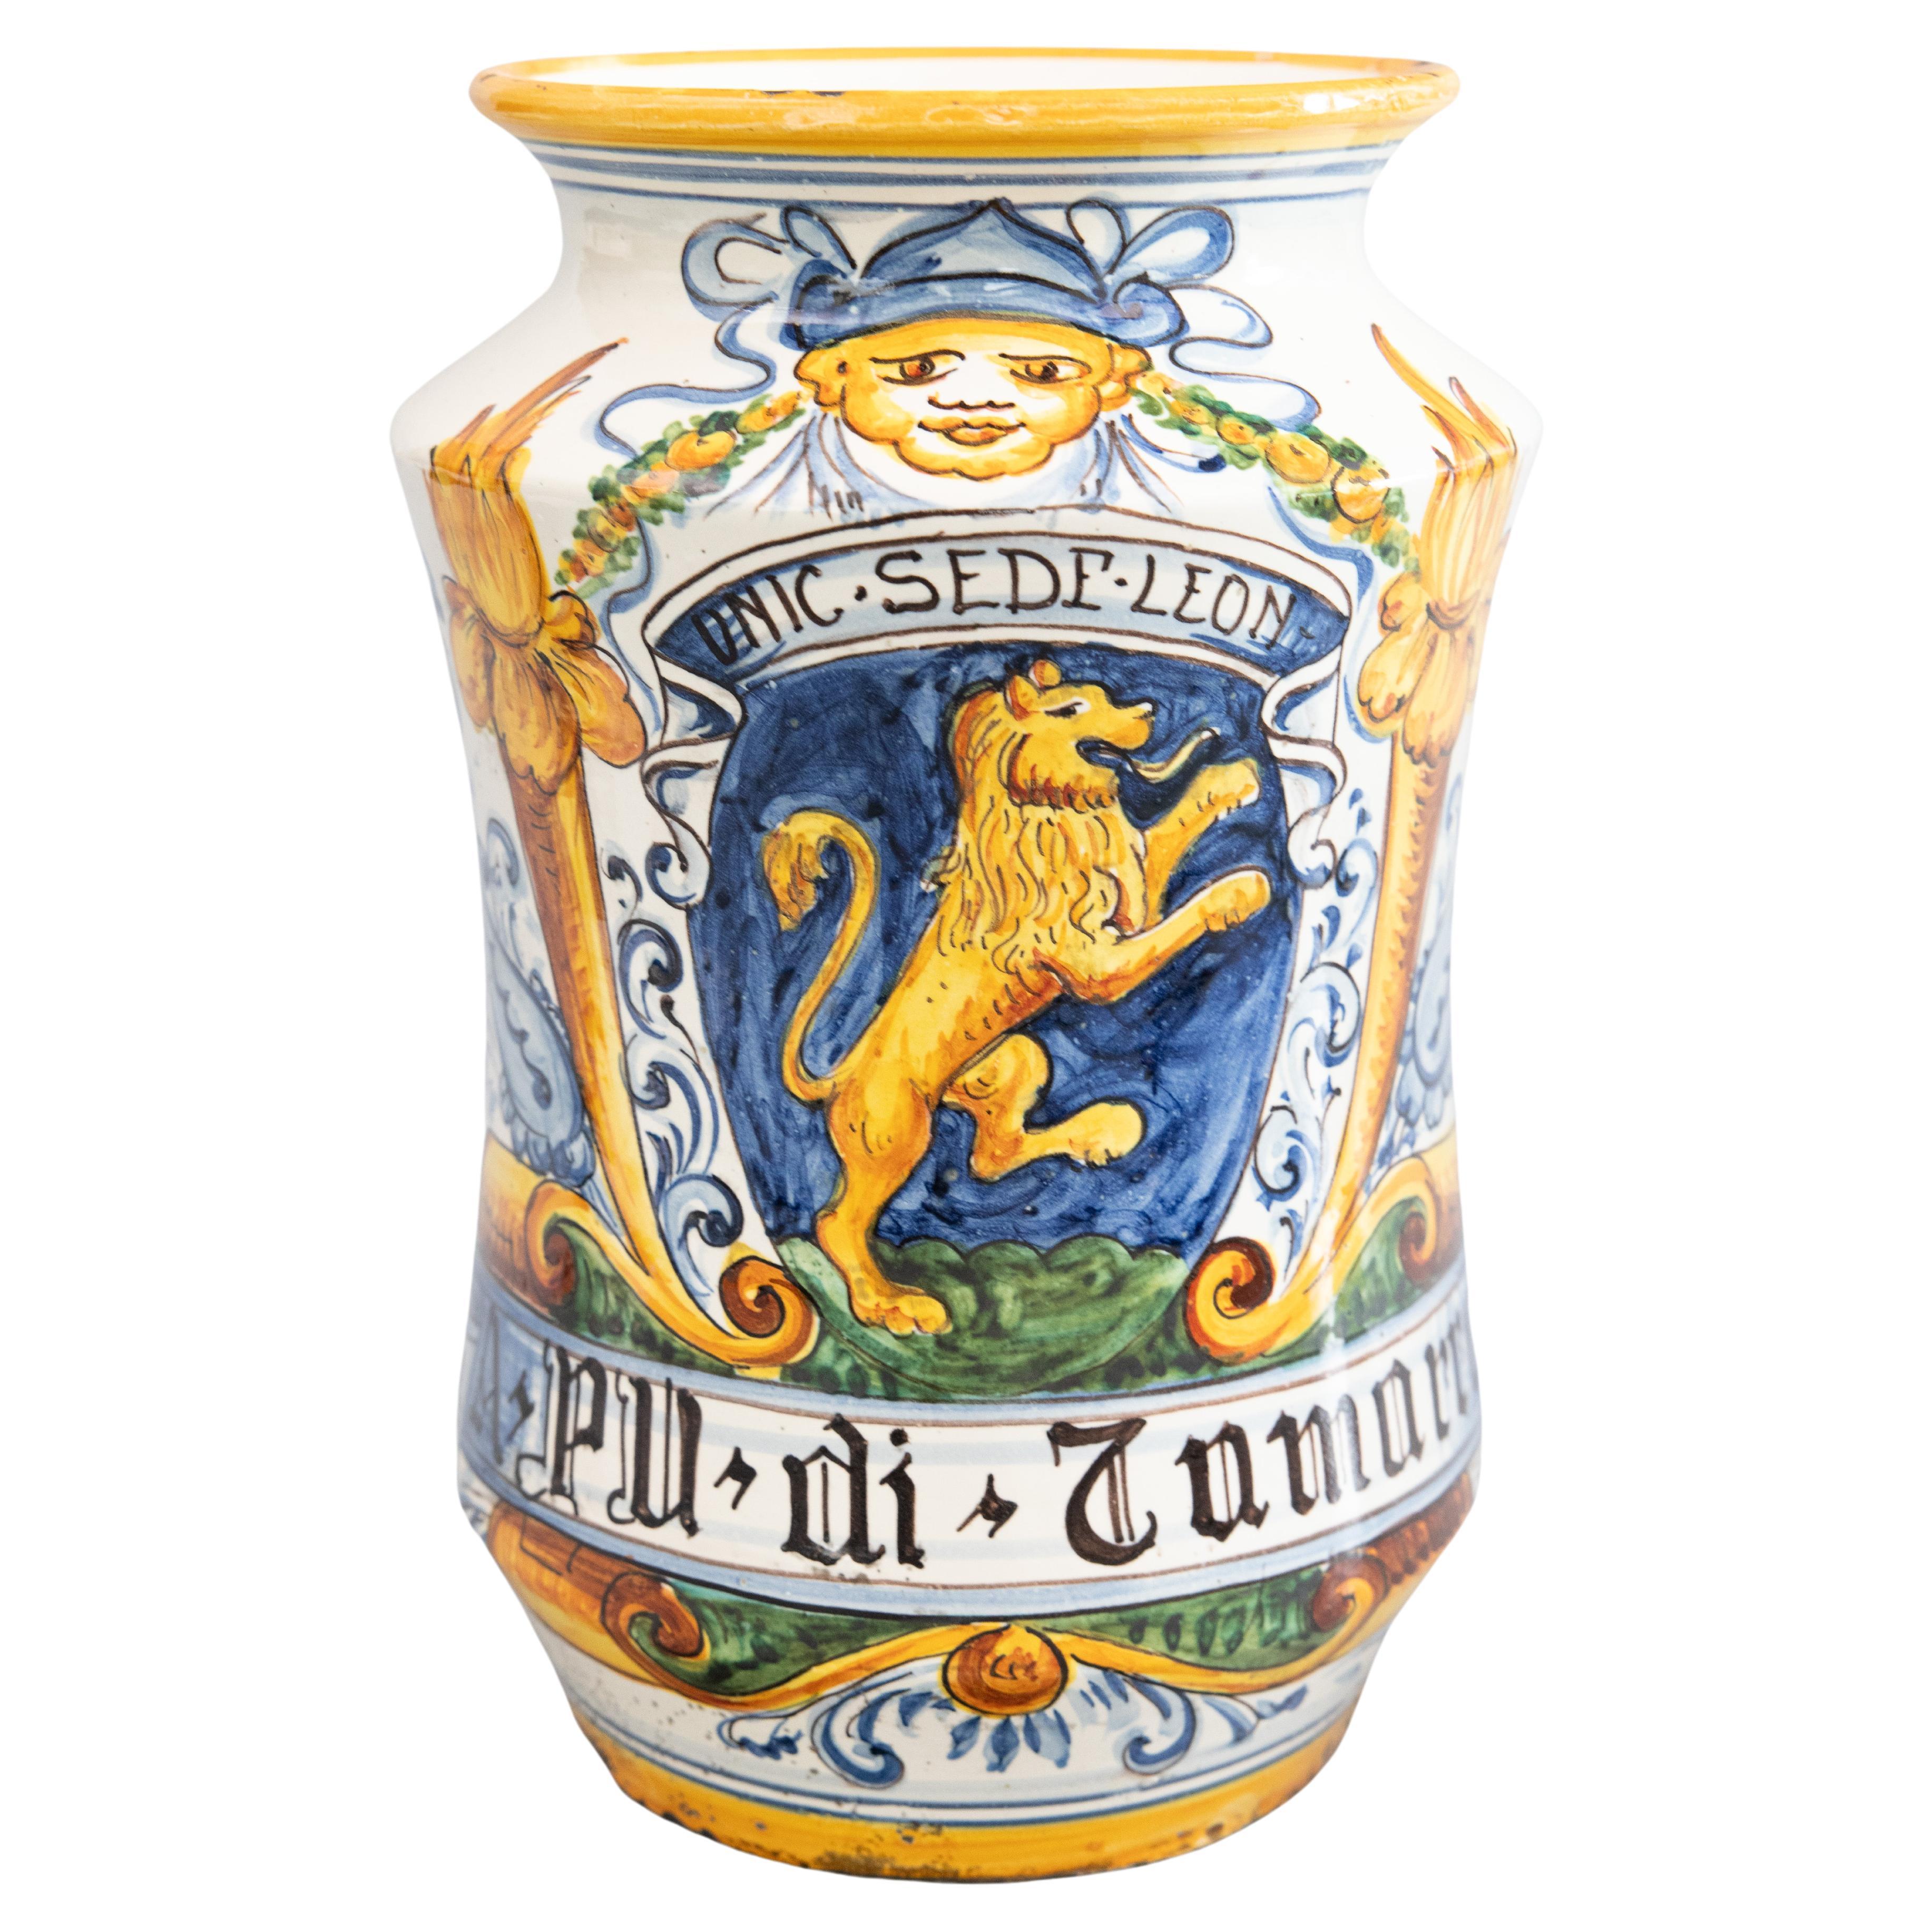 19th Century Italian Faience Albarello Apothecary Jar Vase